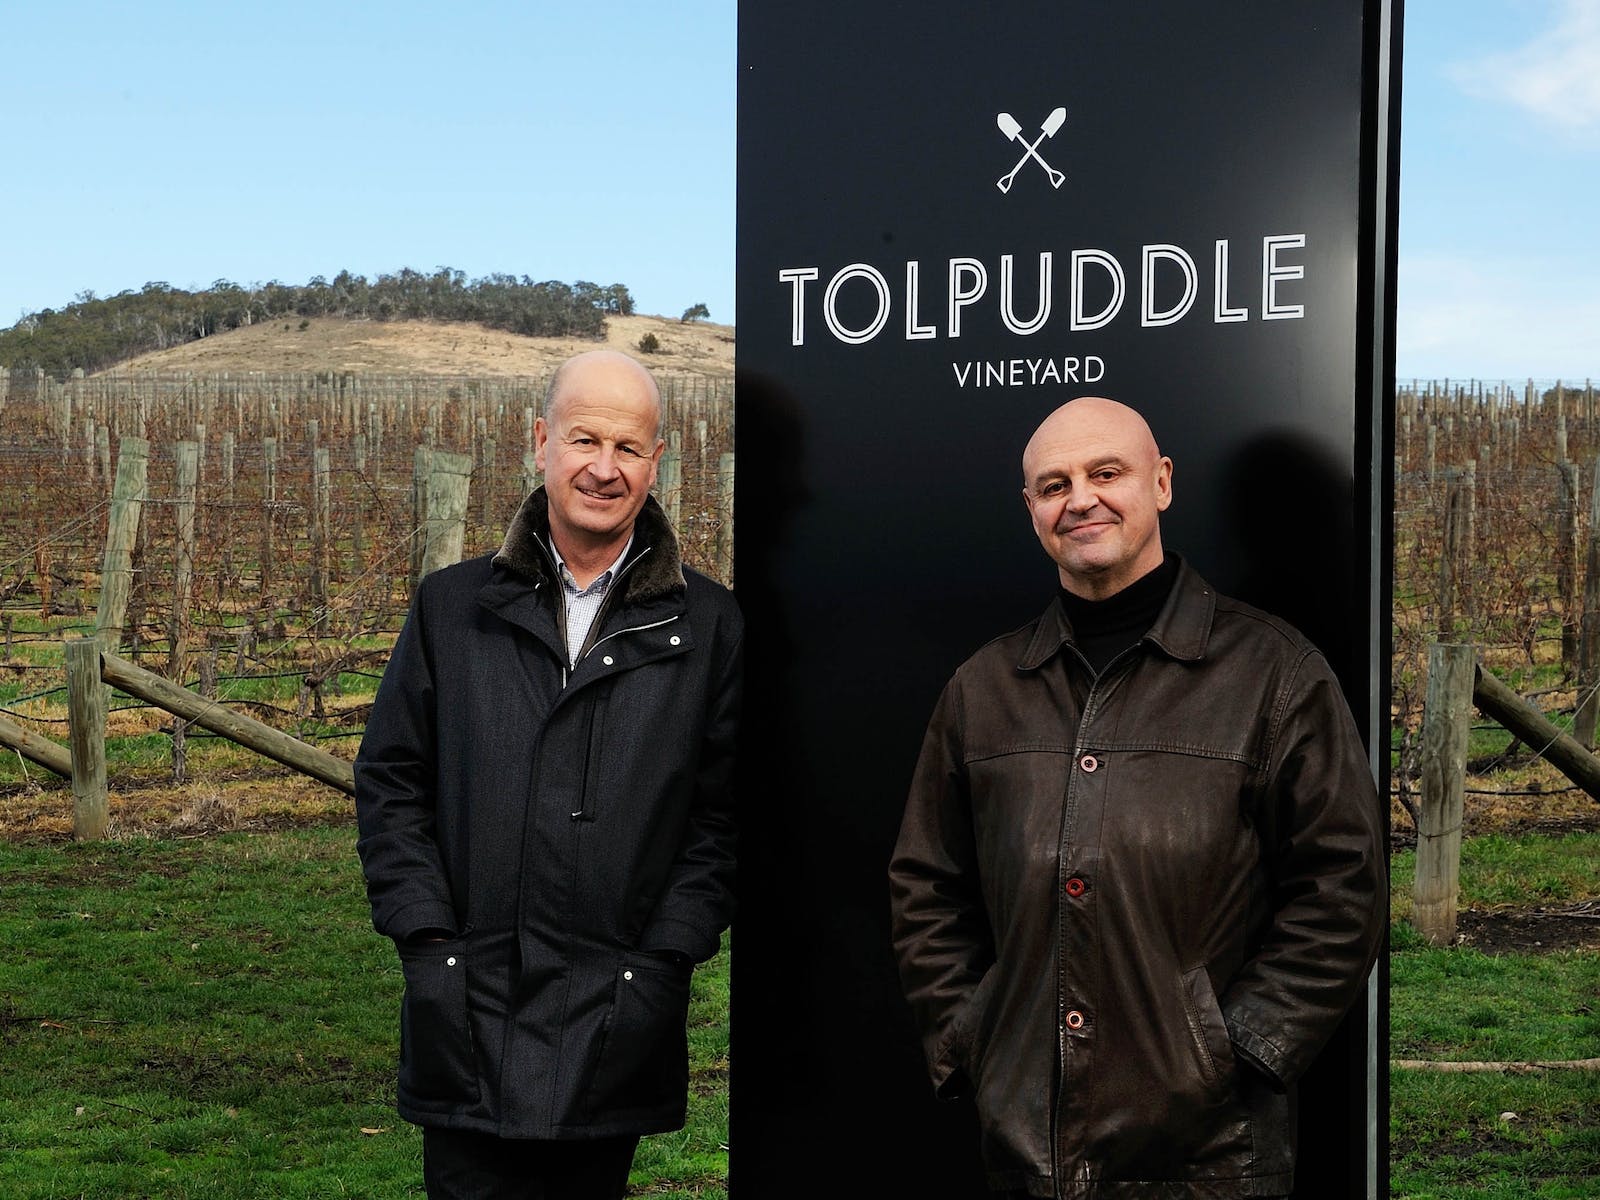 tolpuddle vineyard